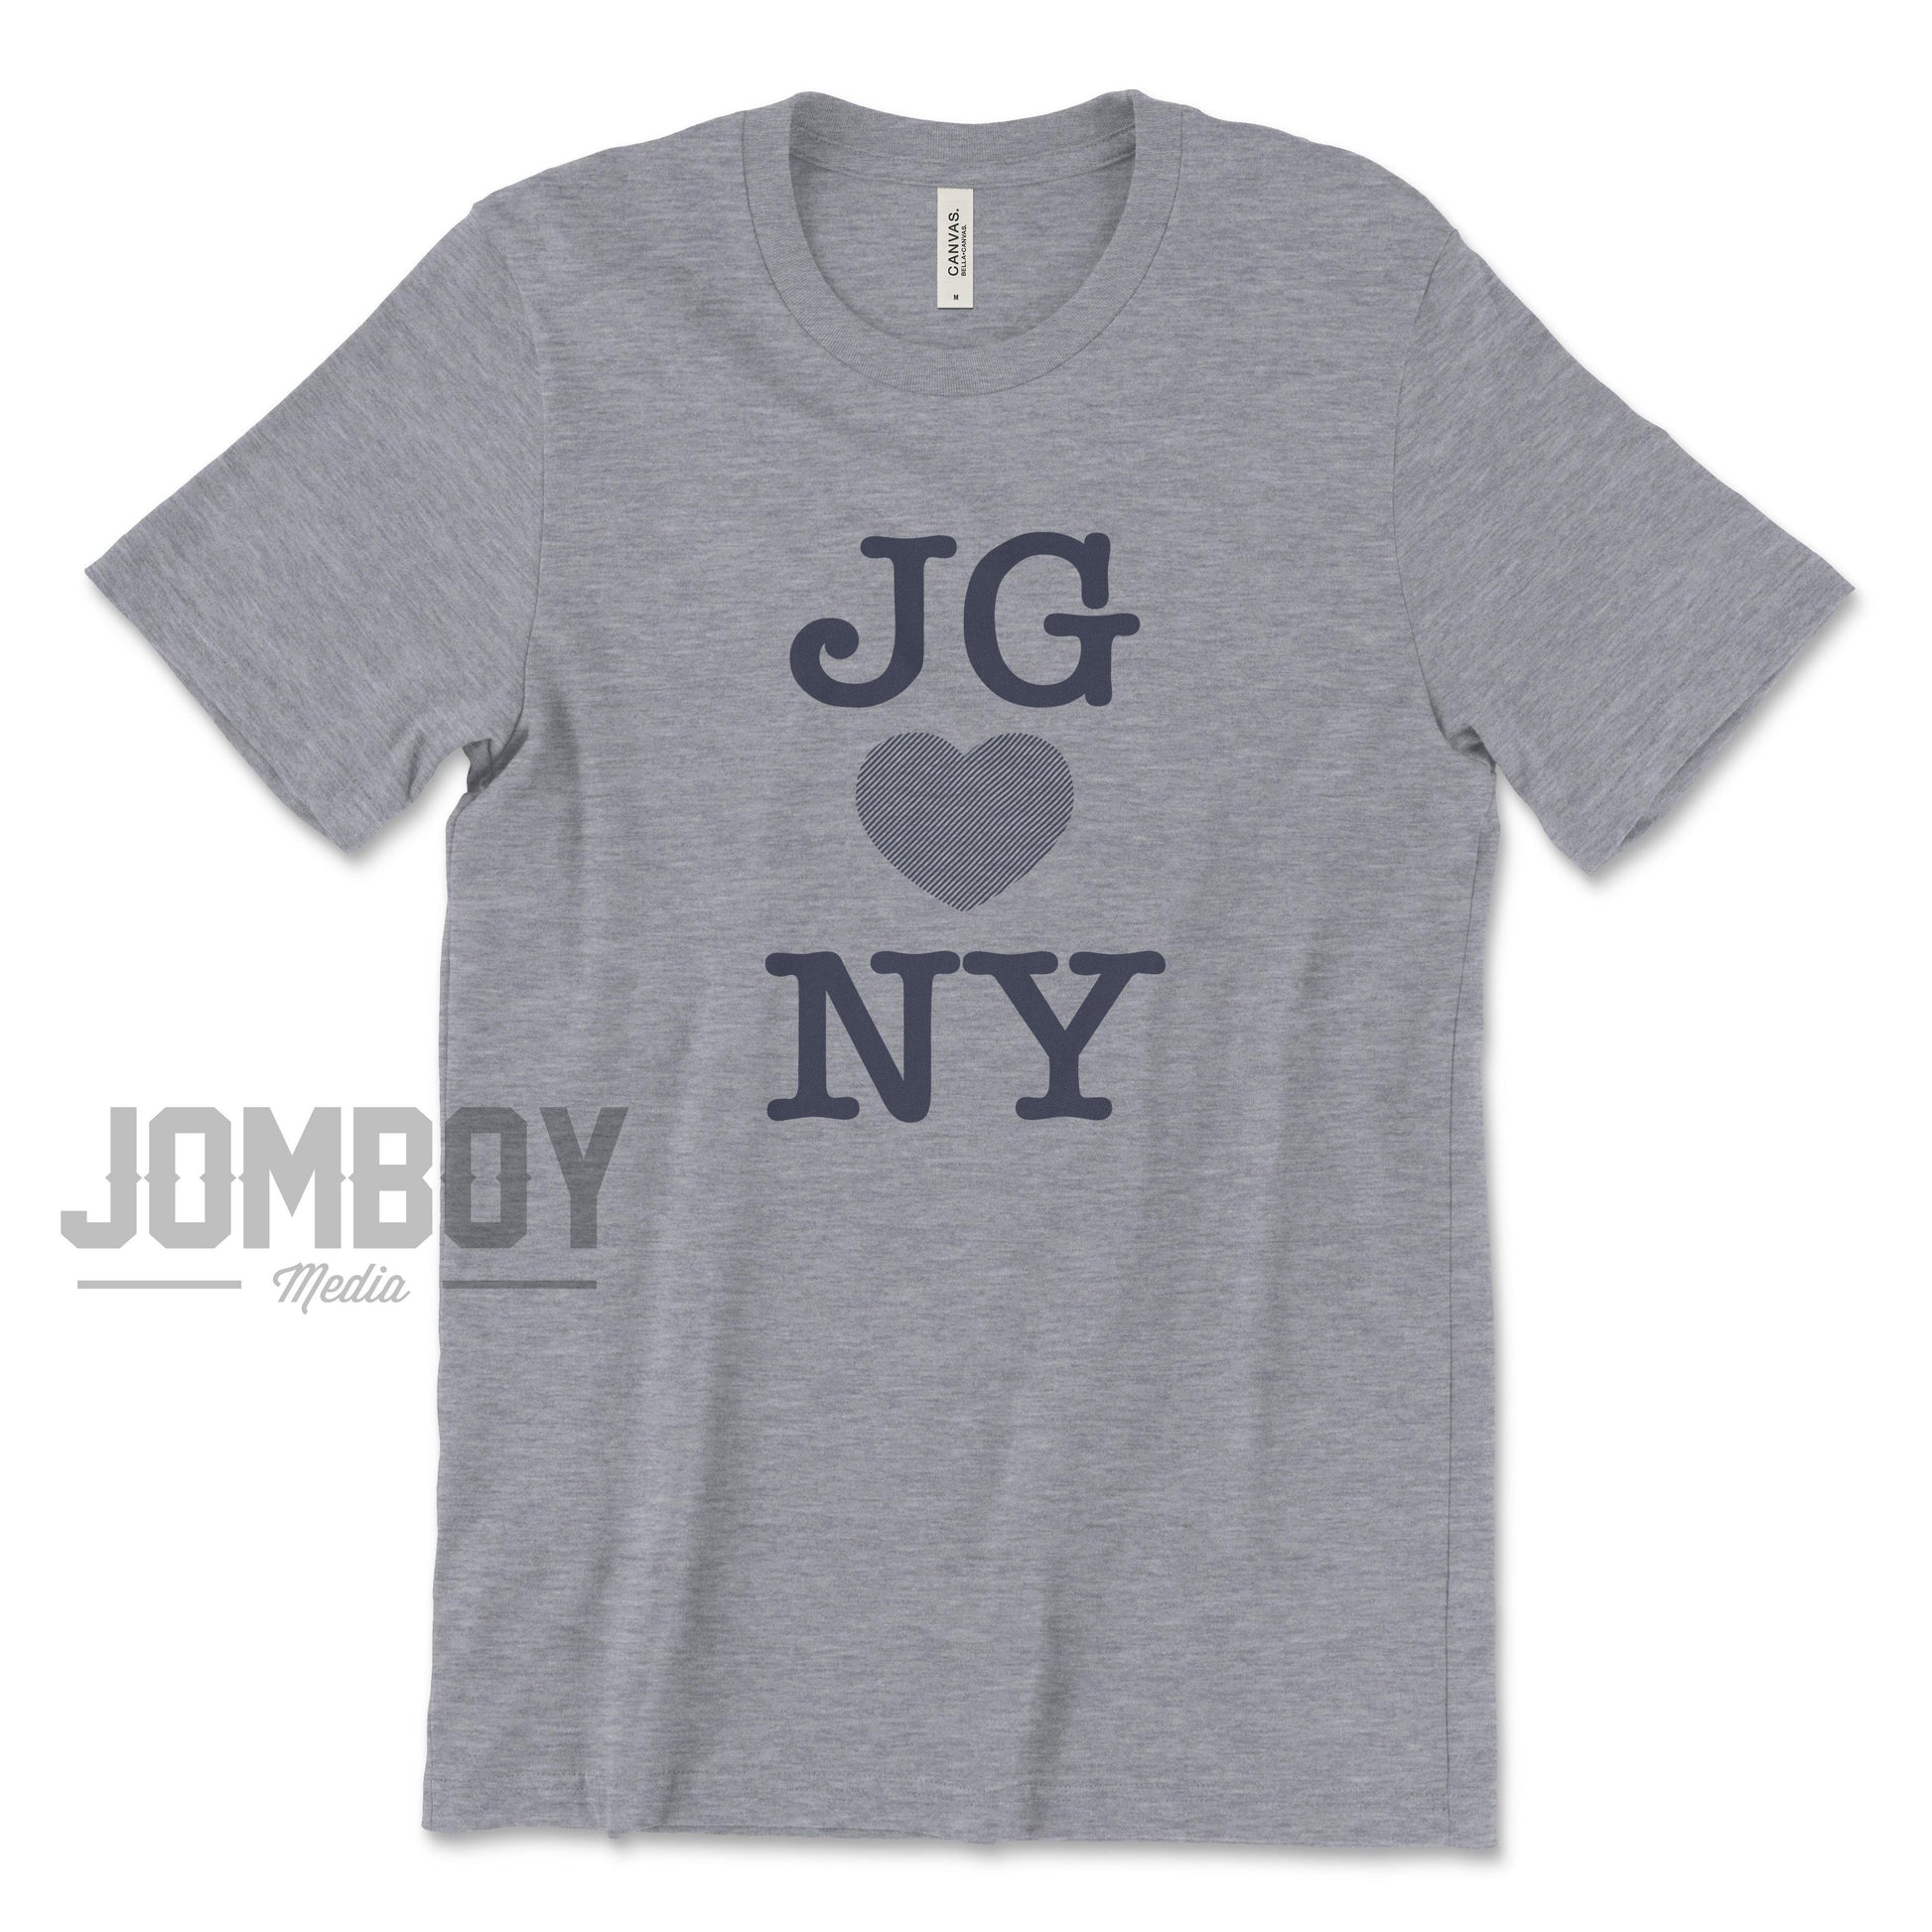 JG ♥ NY | T-Shirt - Jomboy Media